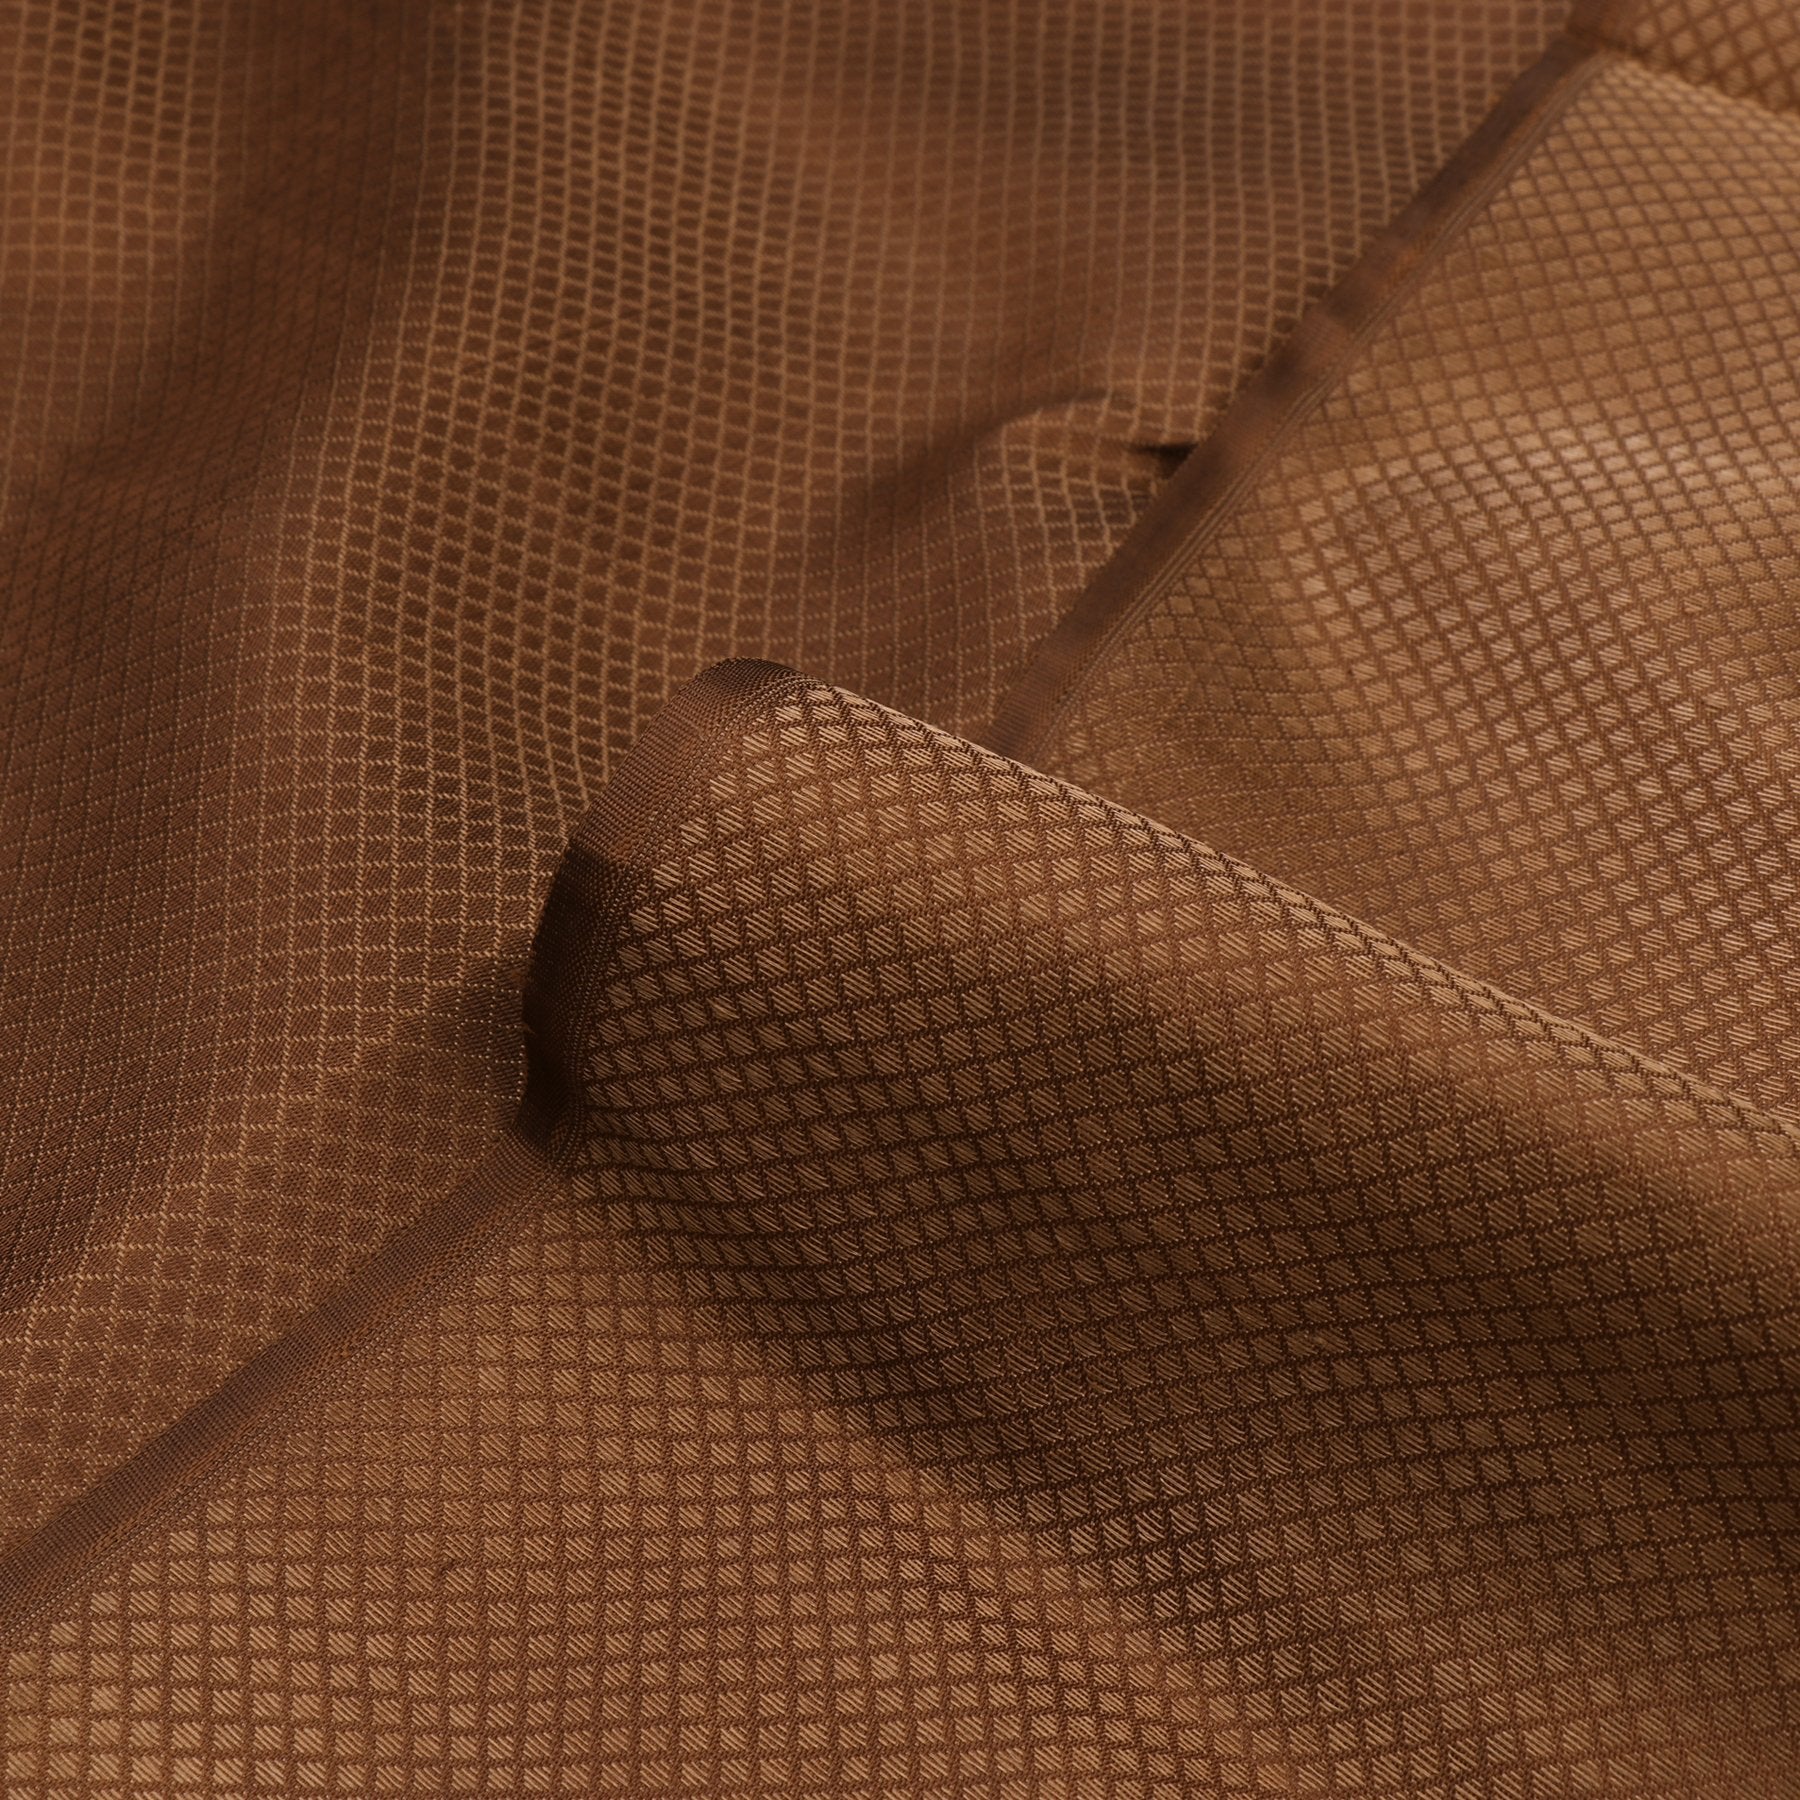 Kanakavalli Kanjivaram Silk Fabric Length 110-27-110287 - Profile View